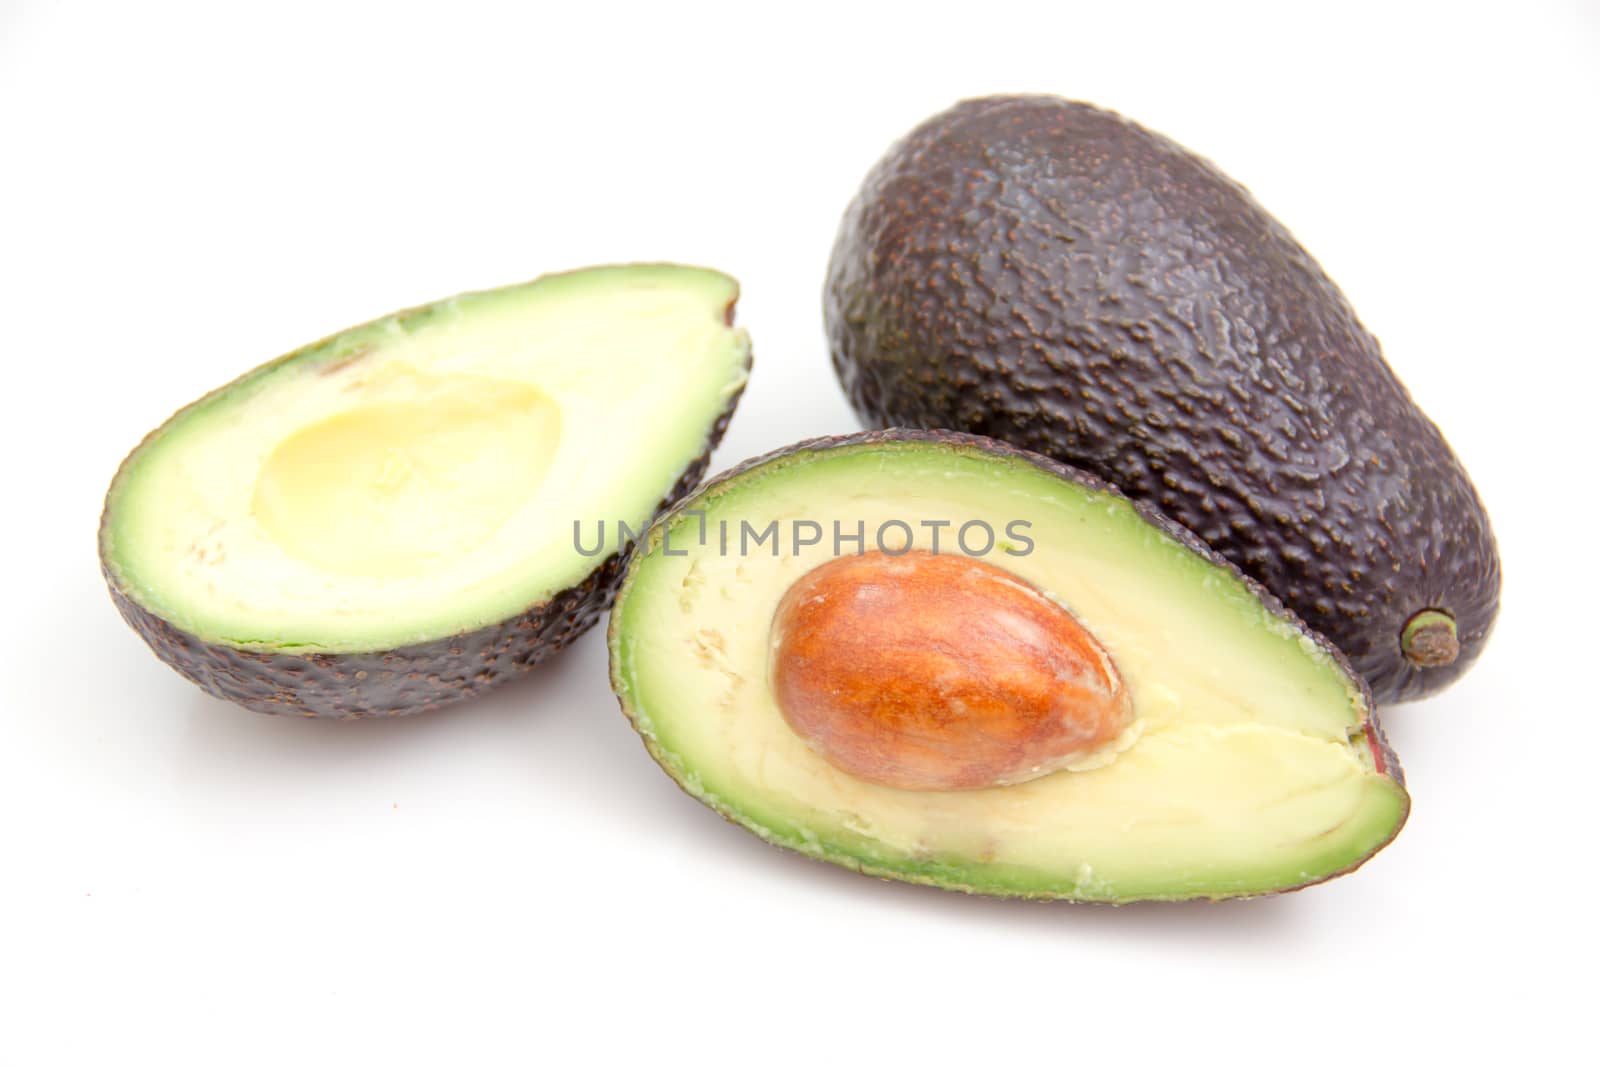 Some avocado by spafra